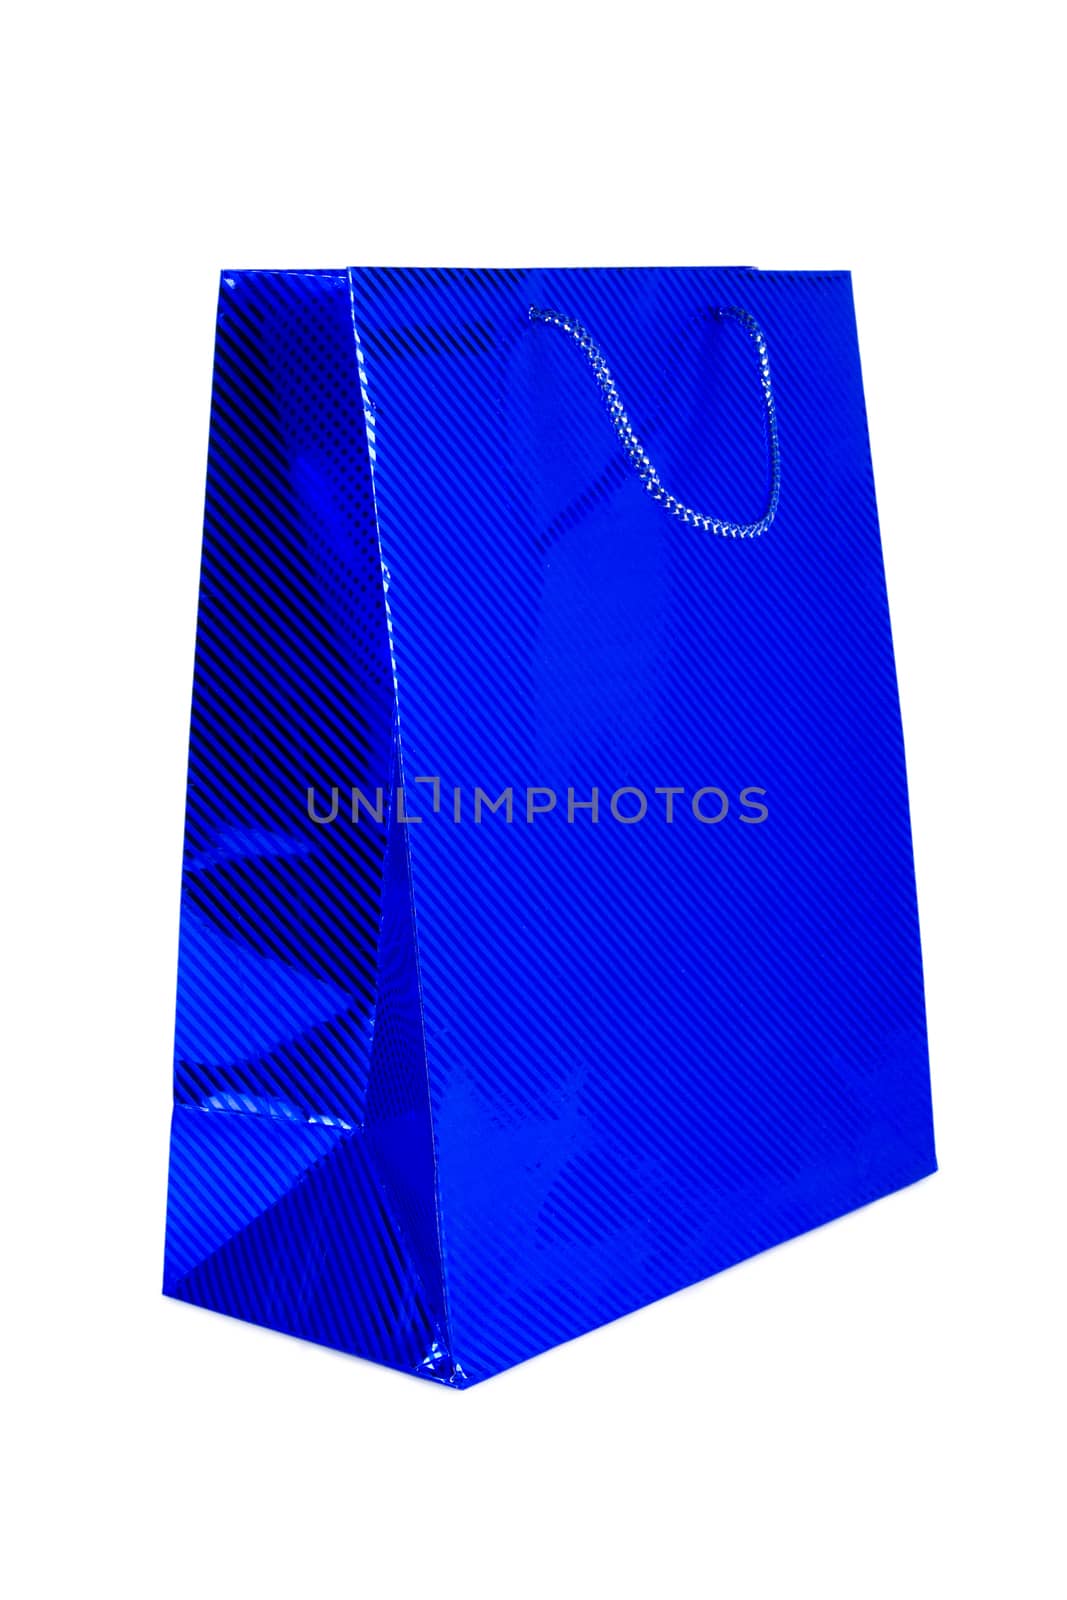 Paper shopping bag by grigorenko